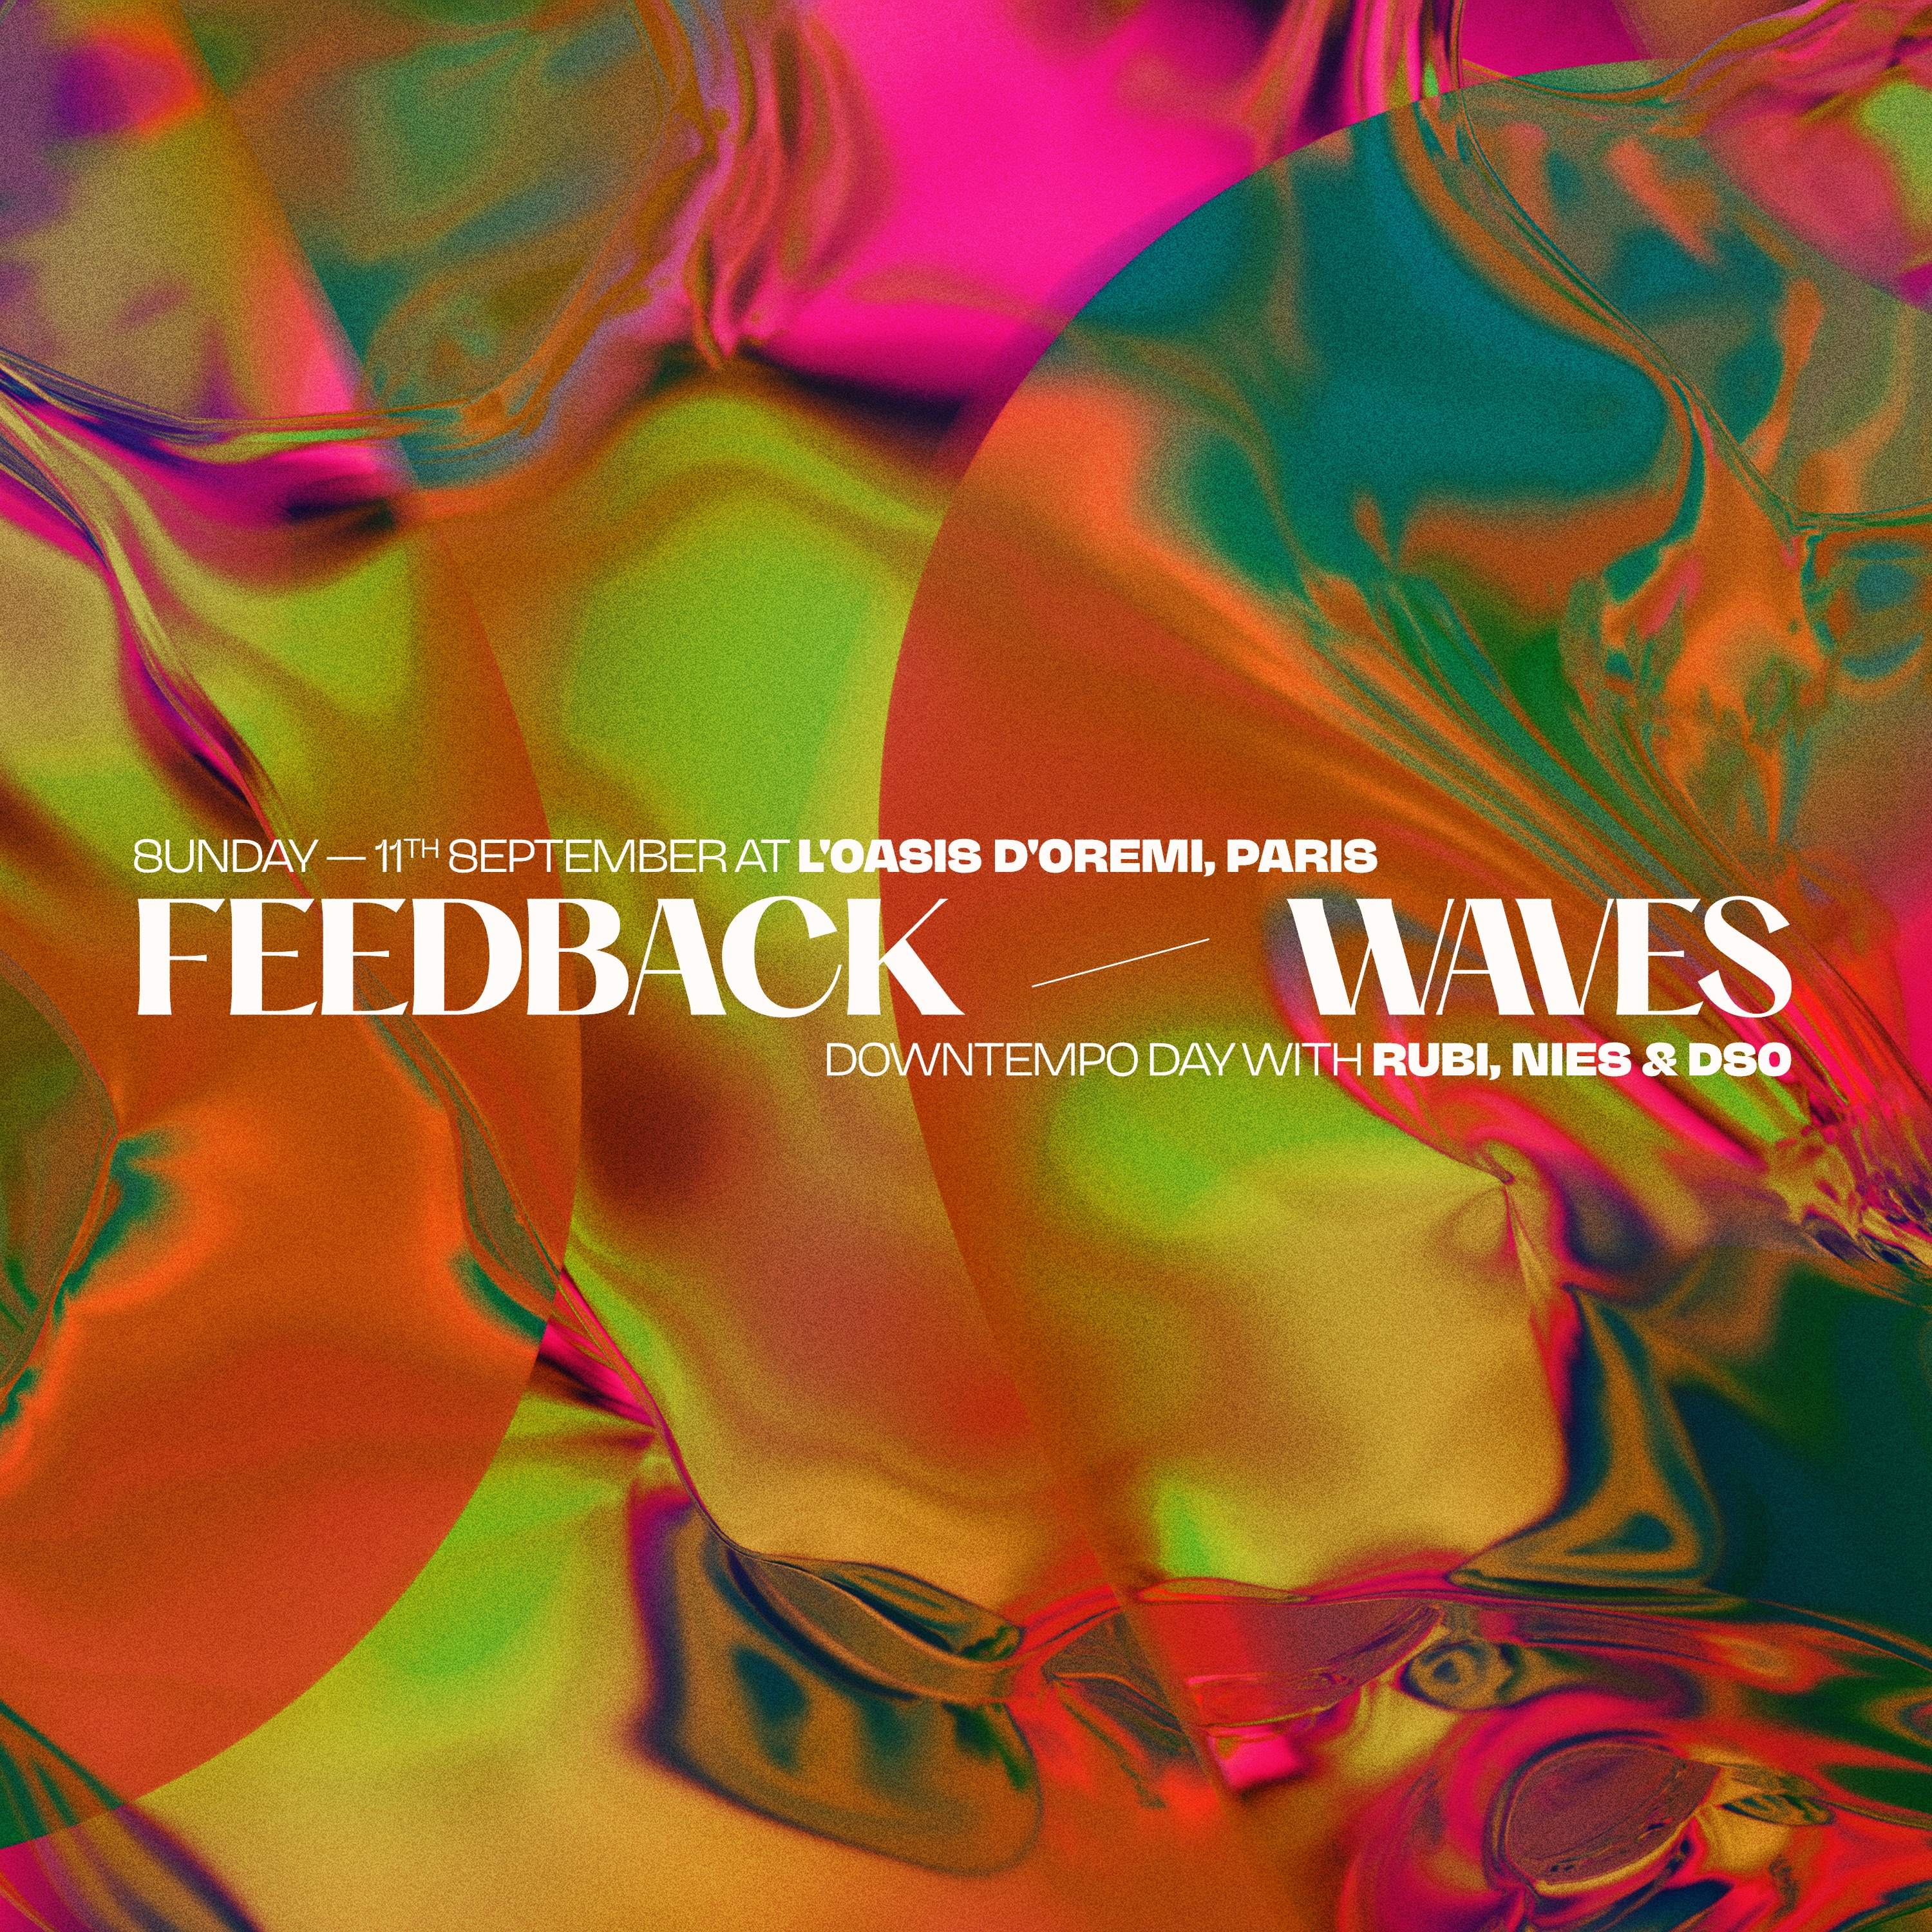 Feedback Waves with Rubi, Nies & Dso - Página frontal